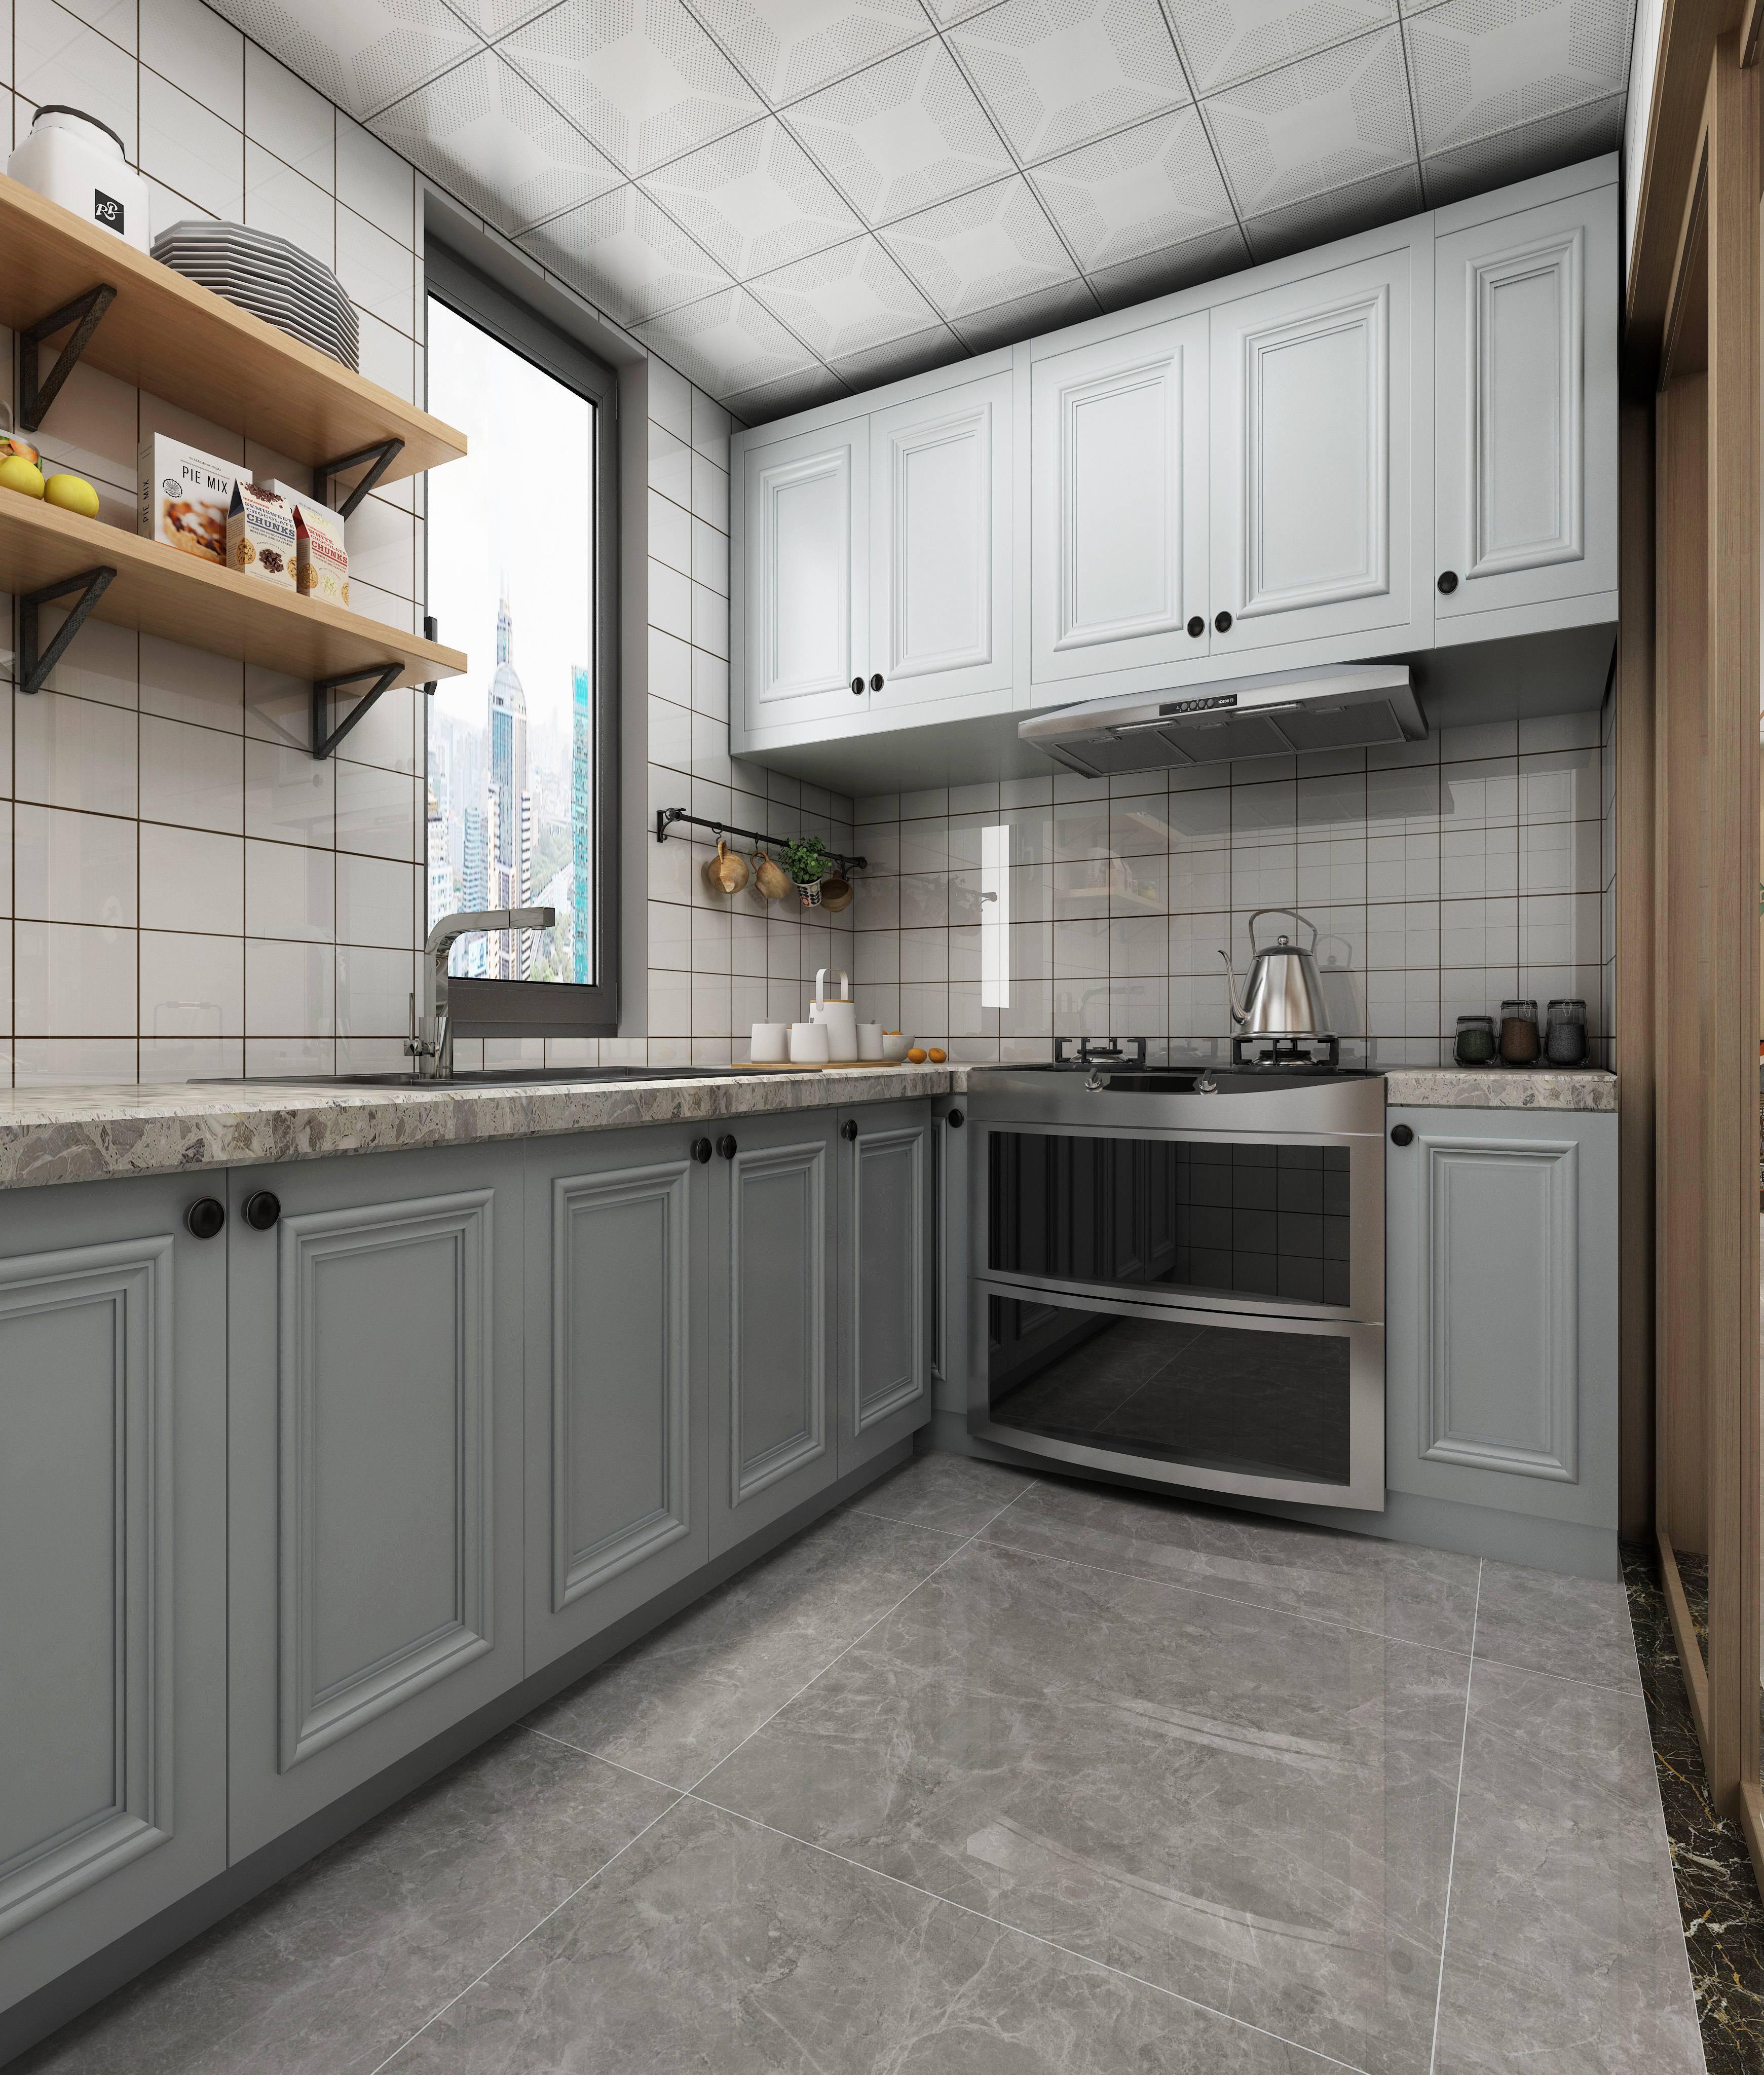 什么样对餐厅厨房专用型地板砖有益处?